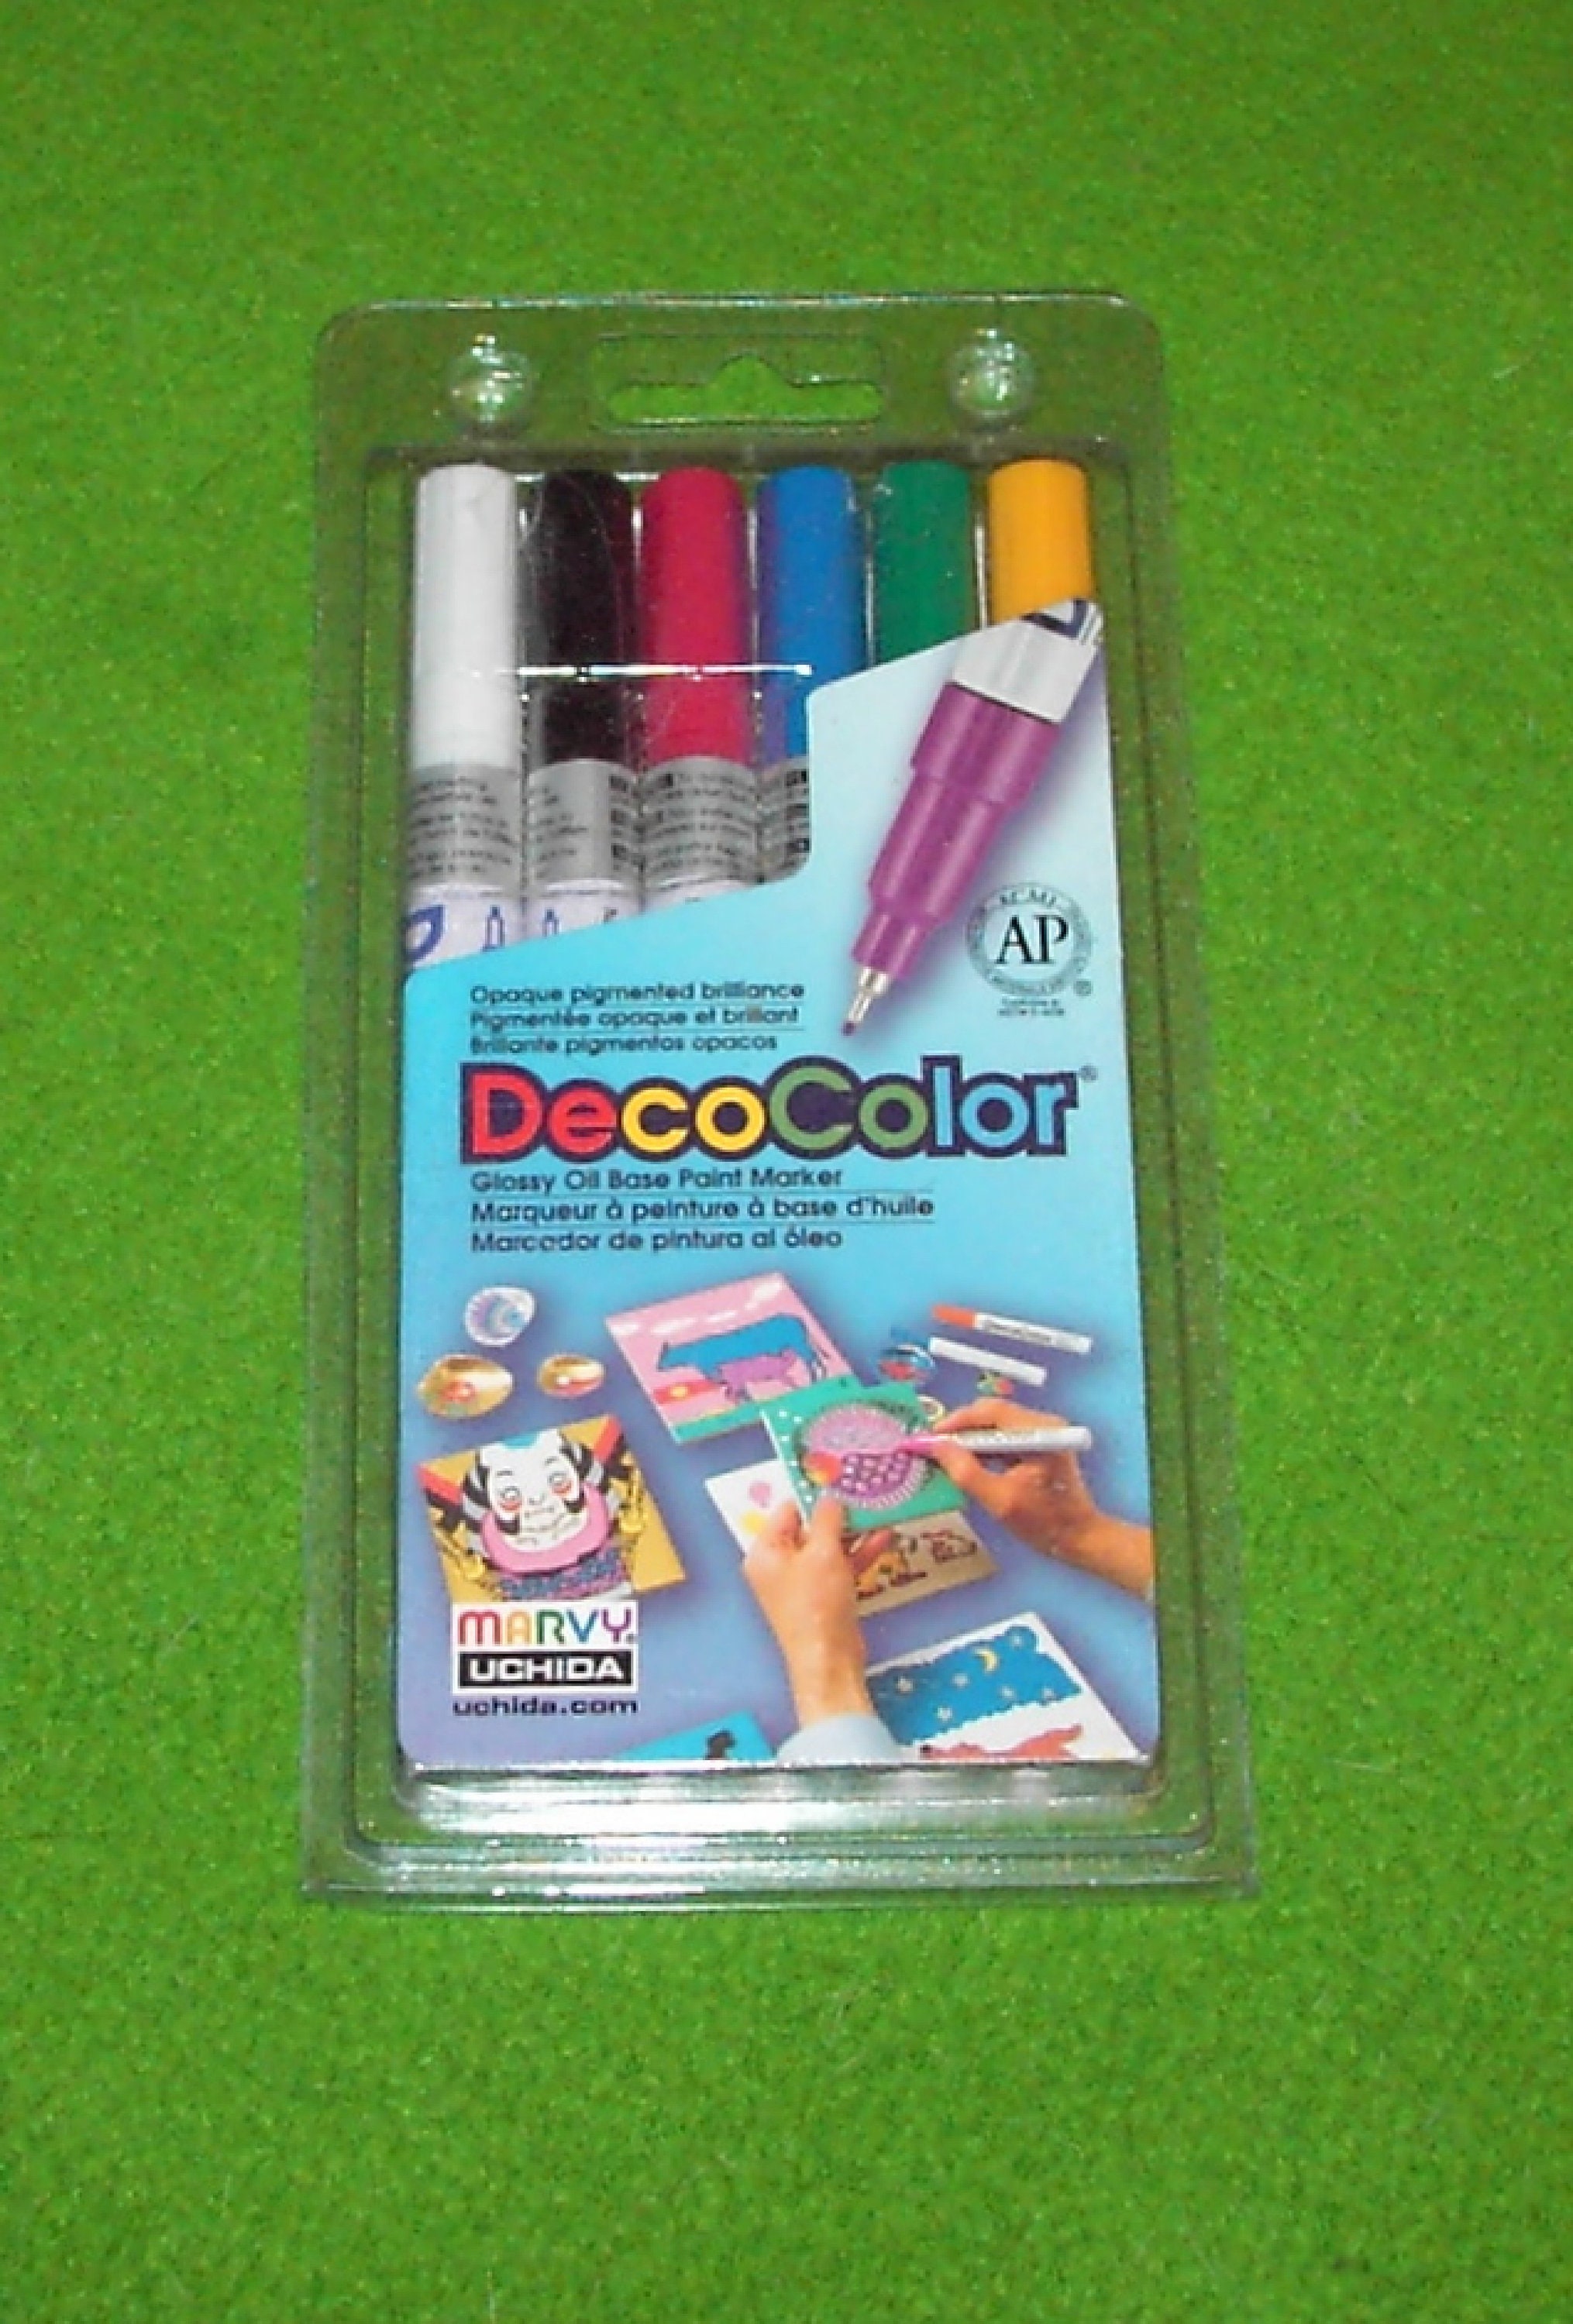 Uchida 200-6B Decocolor Fine Point Paint Marker Set, Pastel Colors, 6pc Set